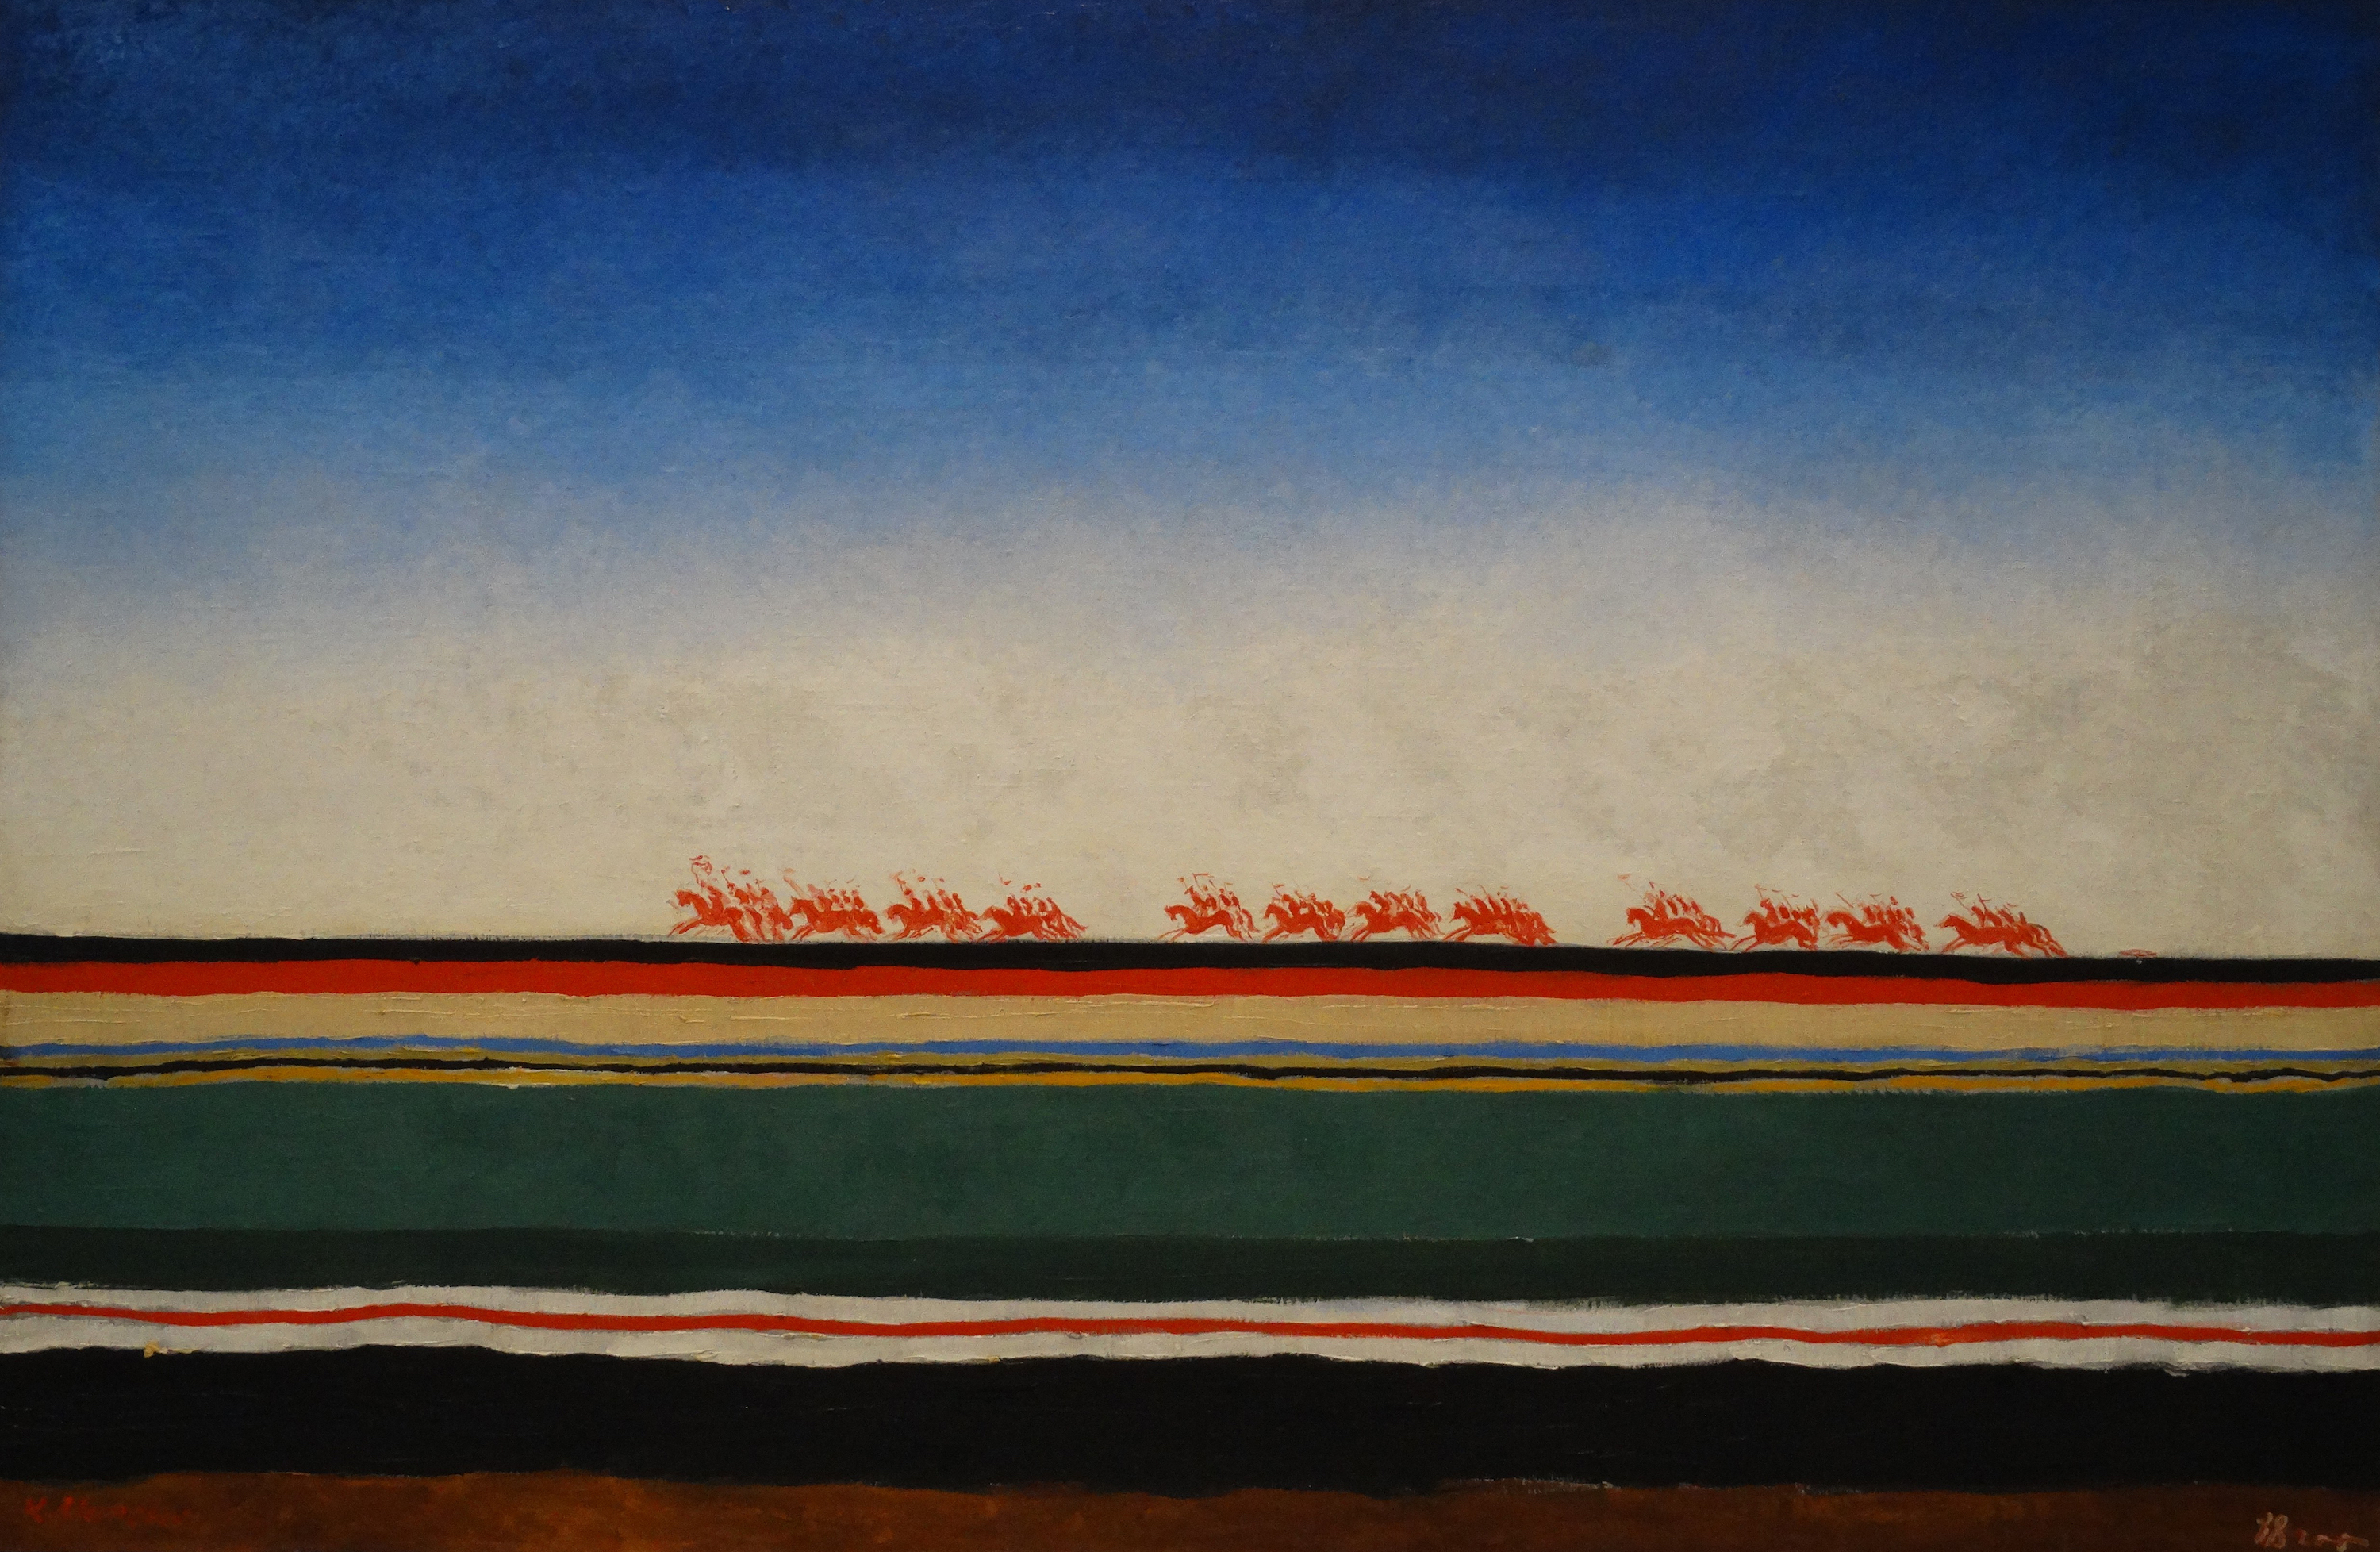 La Cavalerie rouge by Kasimir Malevitch - vers 1932 - 91 x 140 cm 